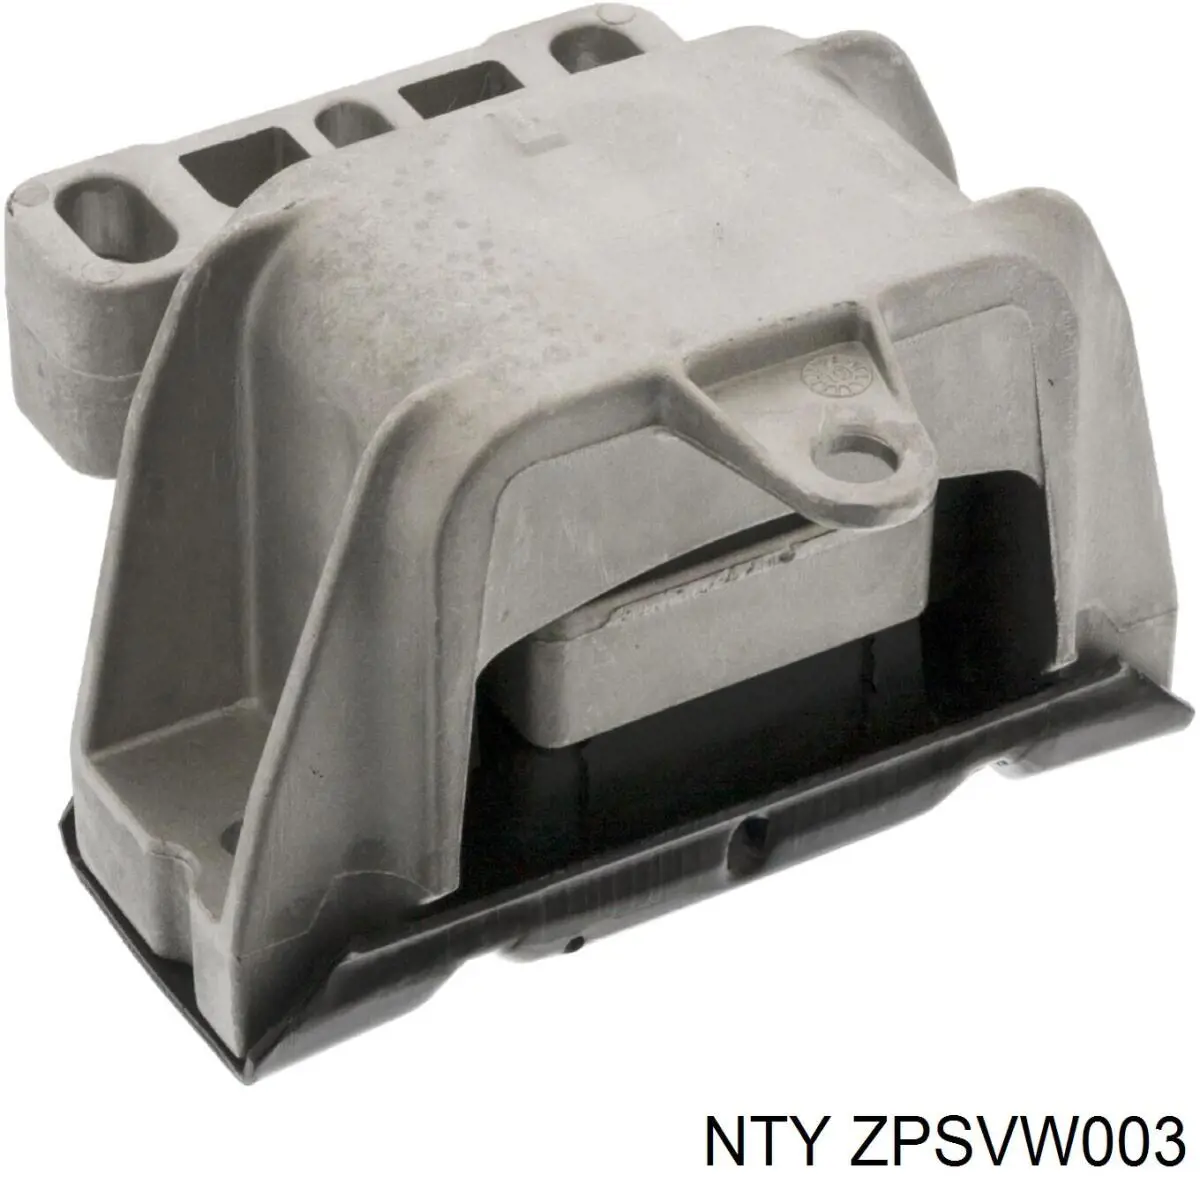 ZPS-VW-003 NTY coxim (suporte esquerdo de motor)